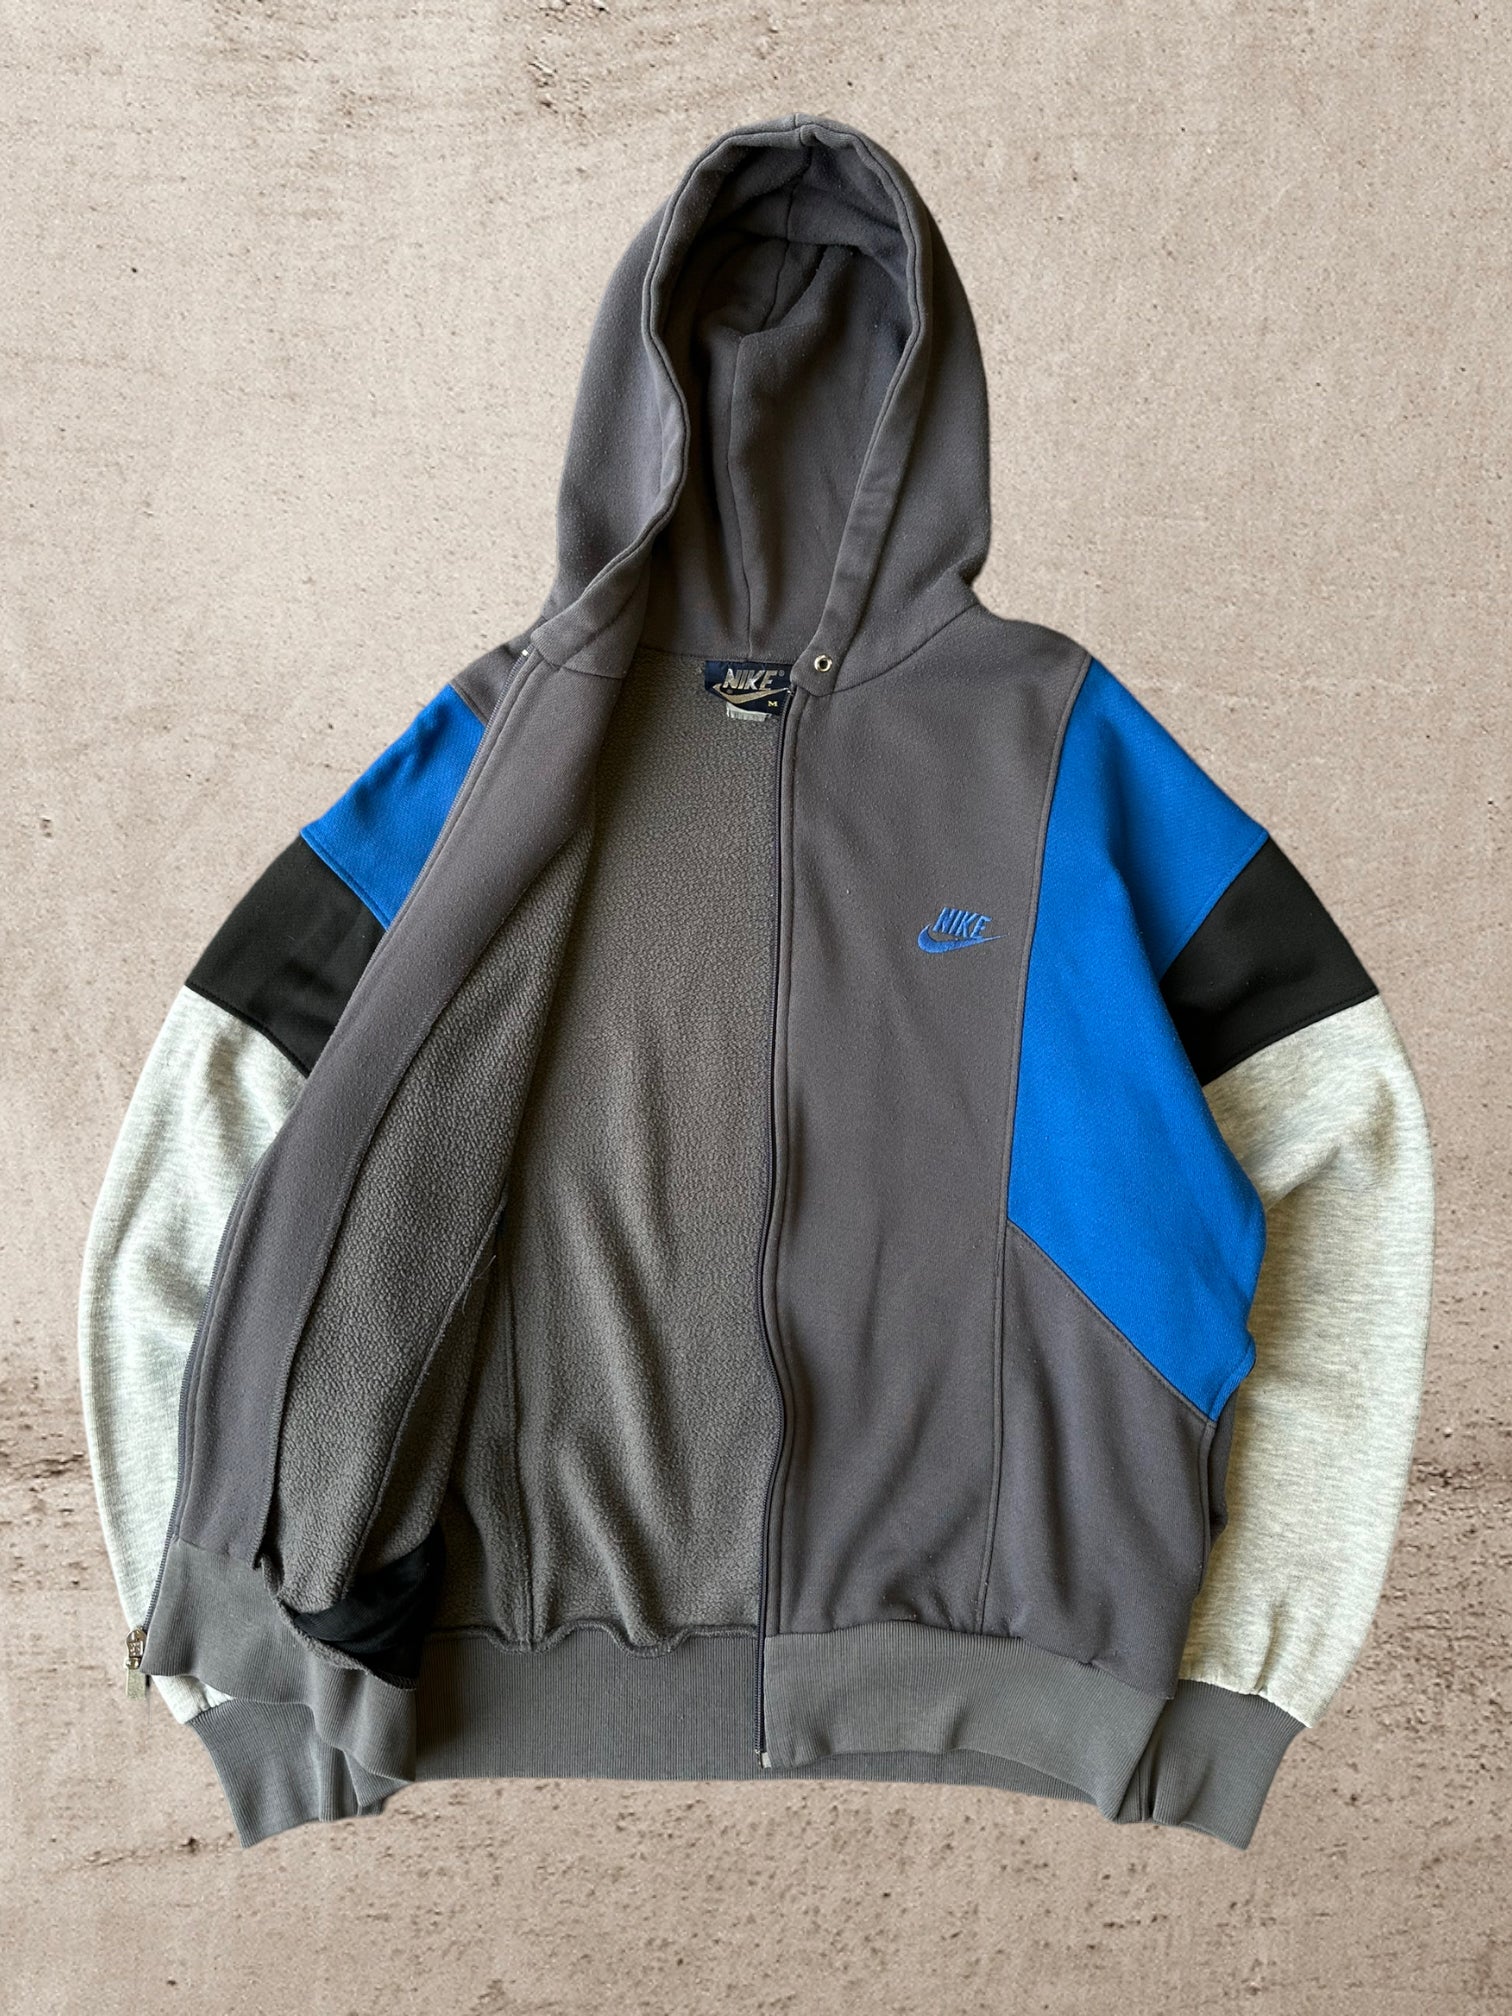 80s Nike Colorblock Zip Up Sweatshirt - Medium